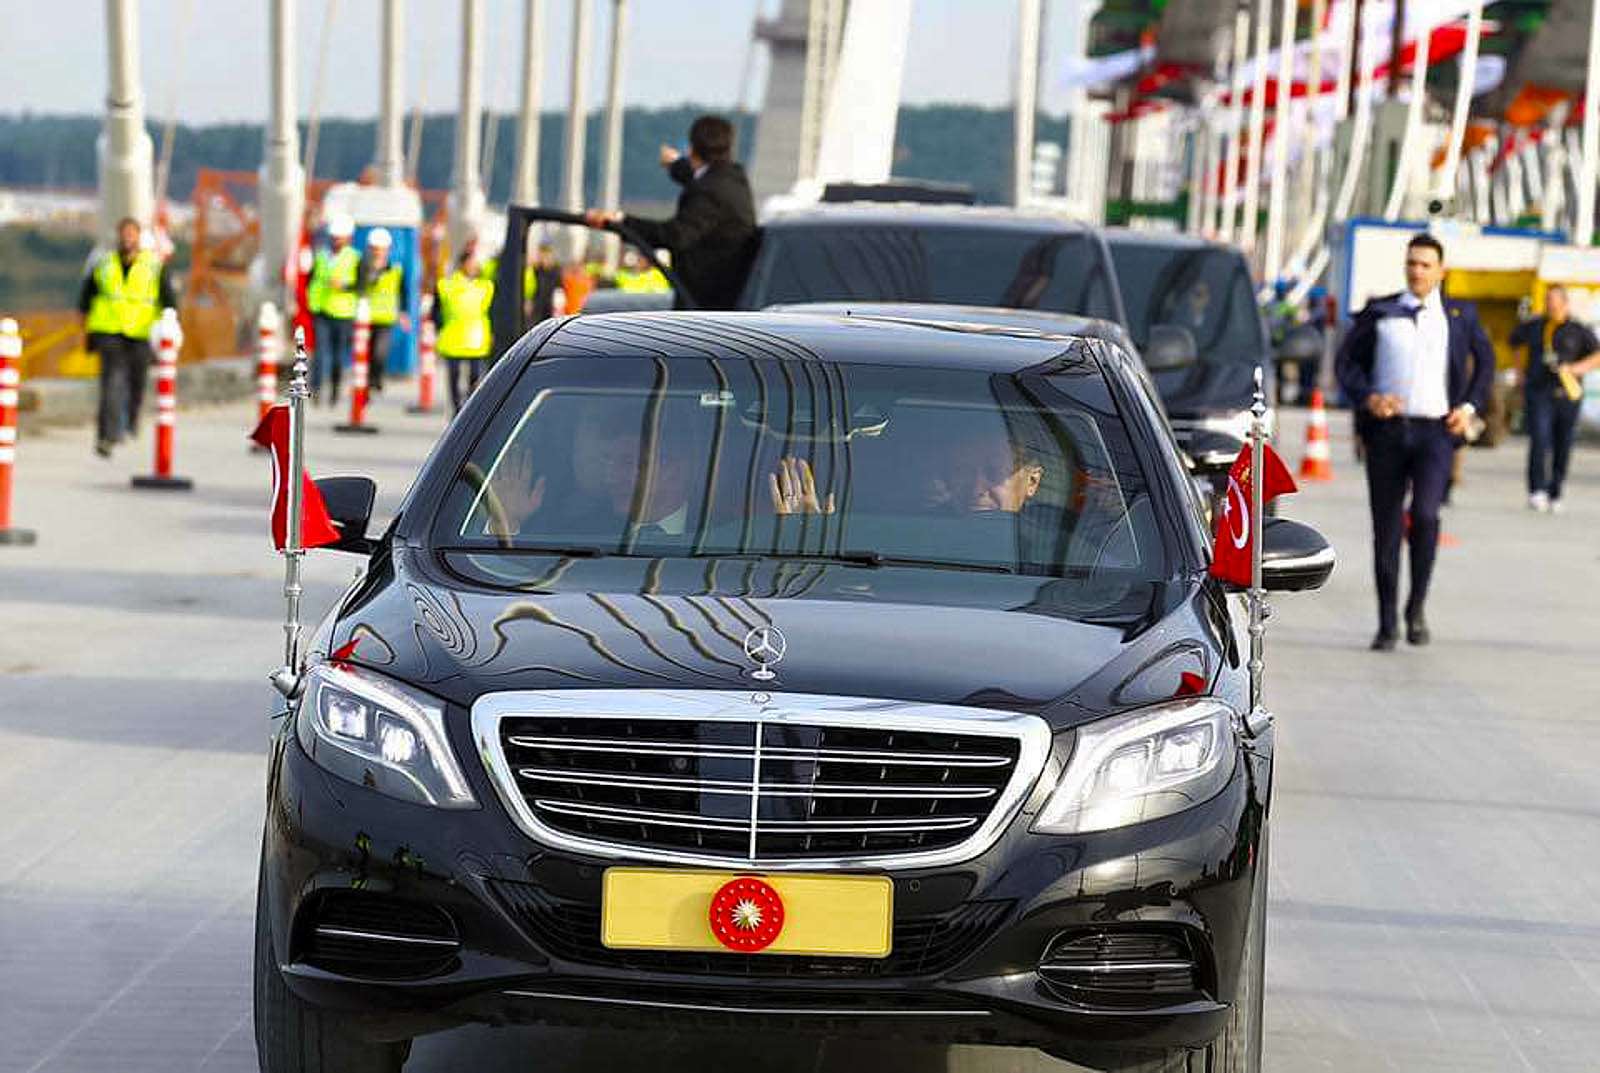 Невольно вспоминается анекдот: «Я не знаю, кто там пассажир, но за рулем – президент». Турецкий президент Эрдоган сам не прочь сесть за руль своего лимузина. Или посадить двойника…